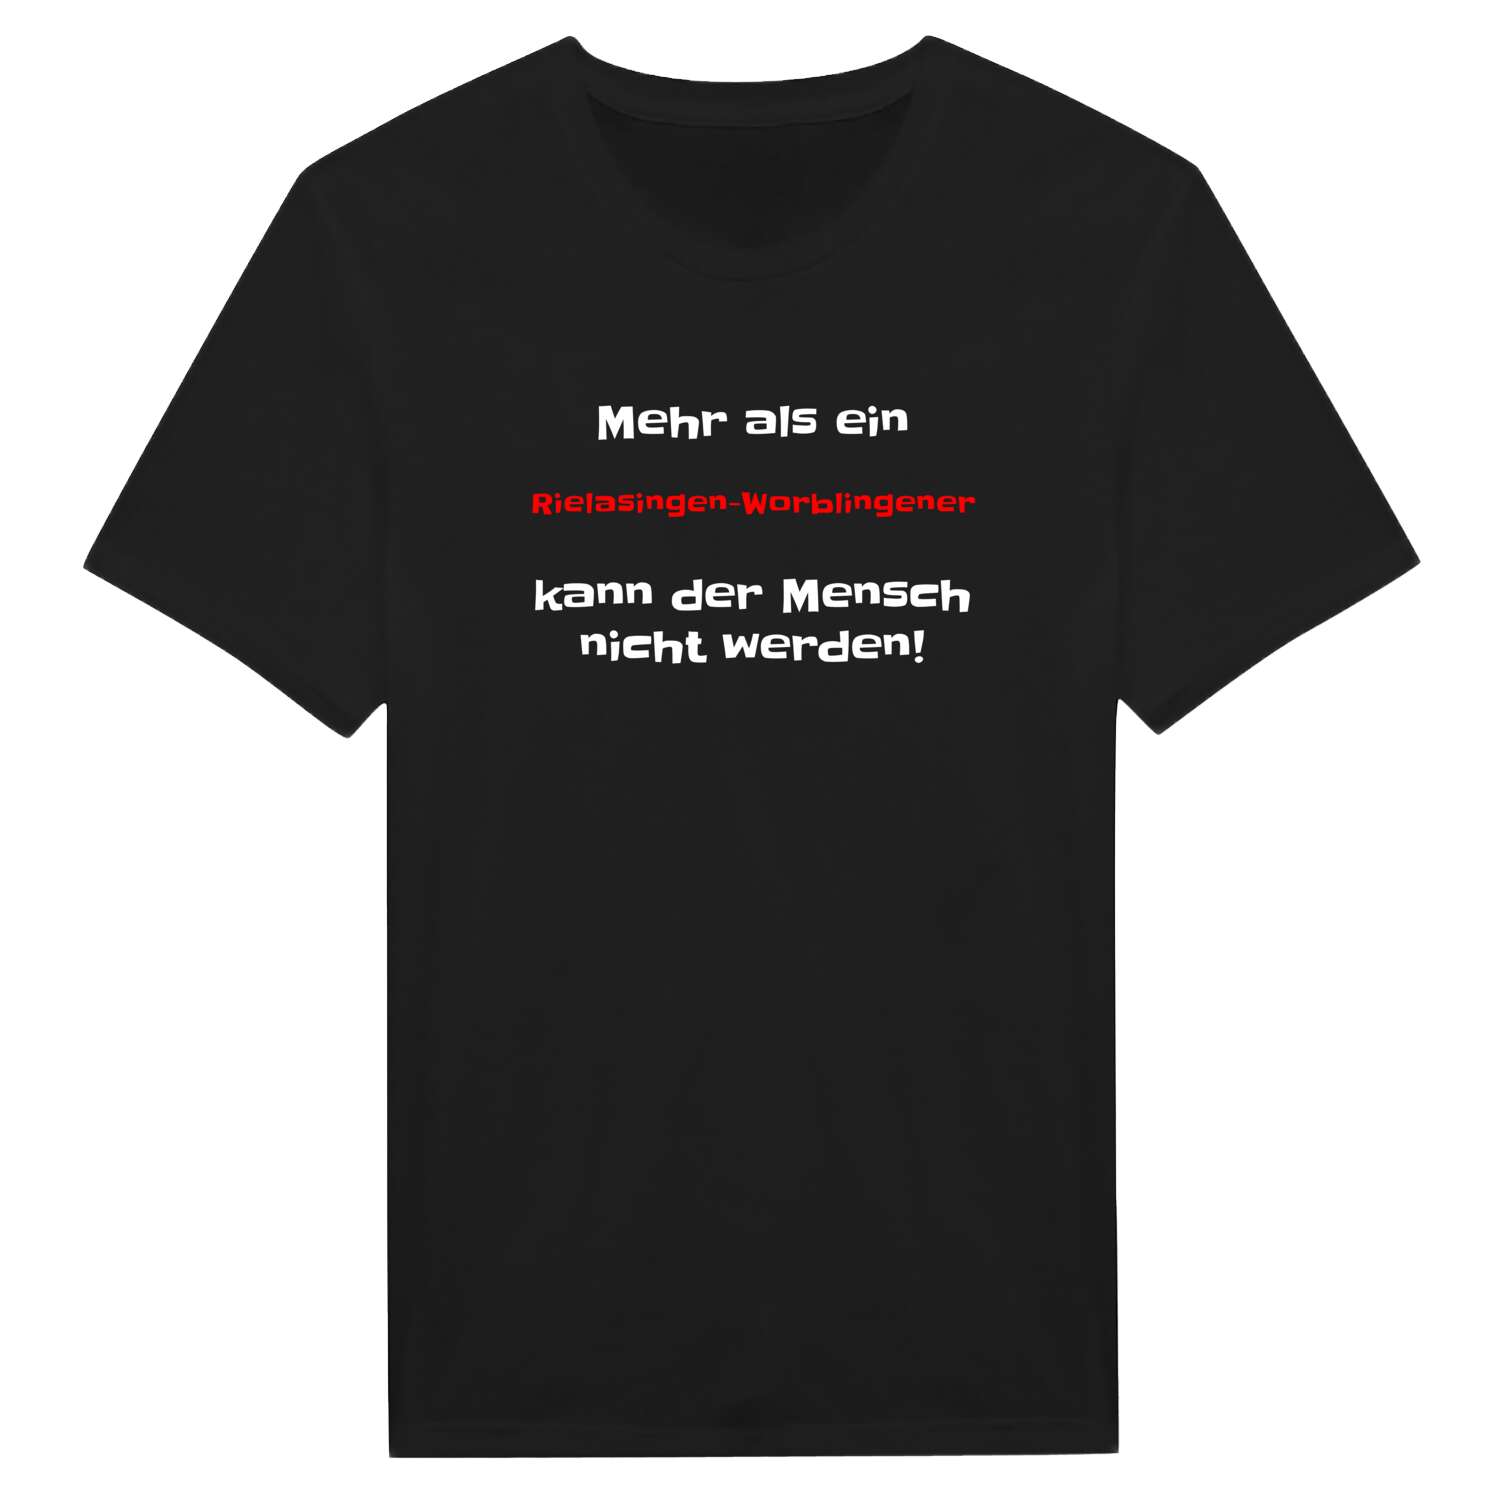 Rielasingen-Worblingen T-Shirt »Mehr als ein«